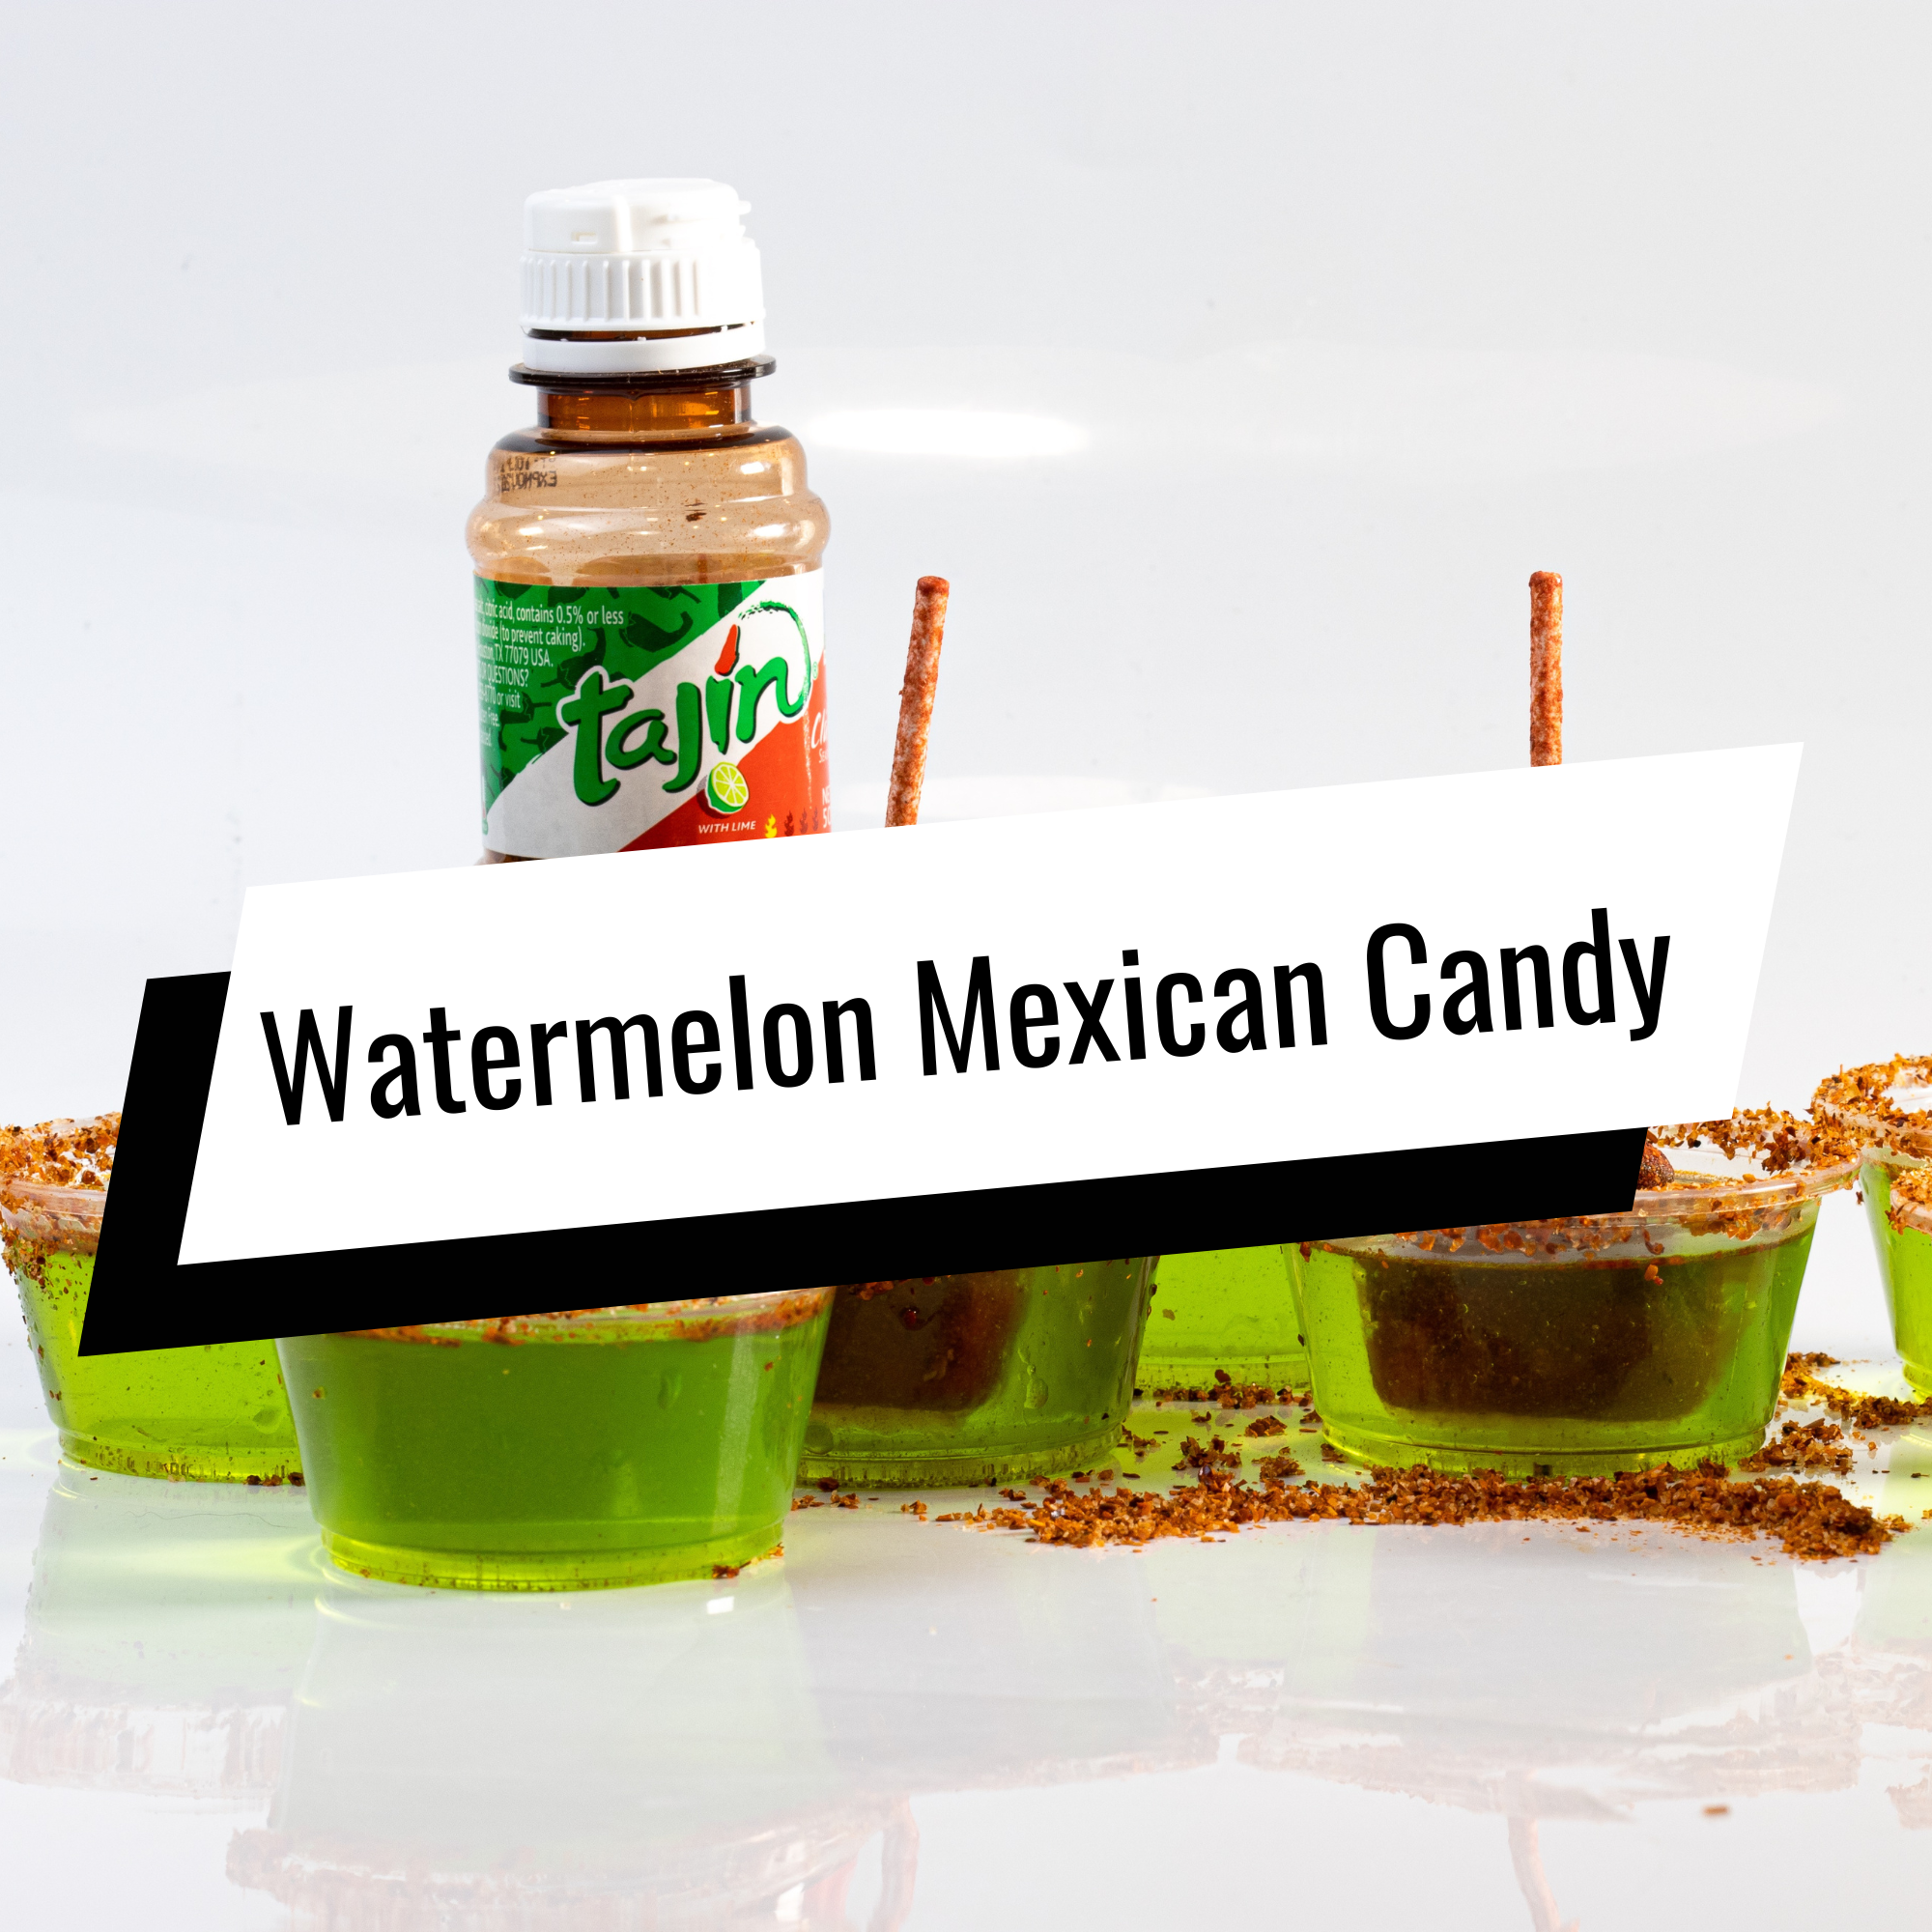 Watermelon Mexican Candy jello shot recipe